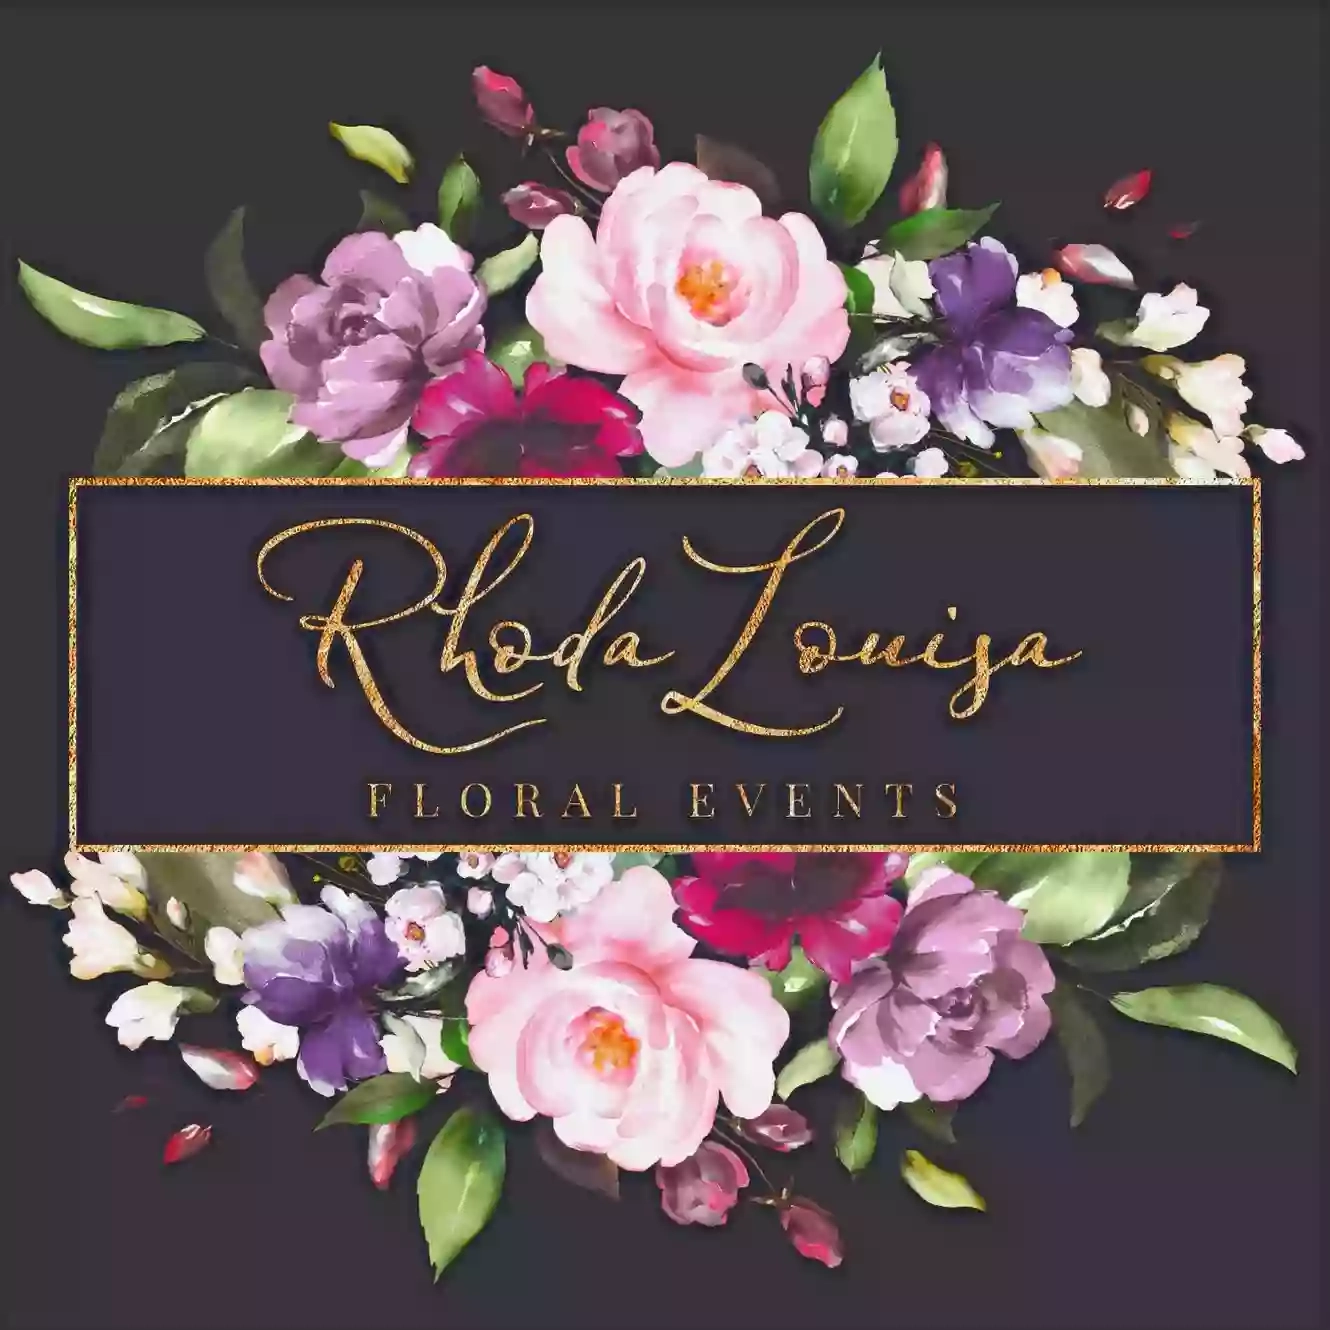 Rhoda Louisa Floral Events